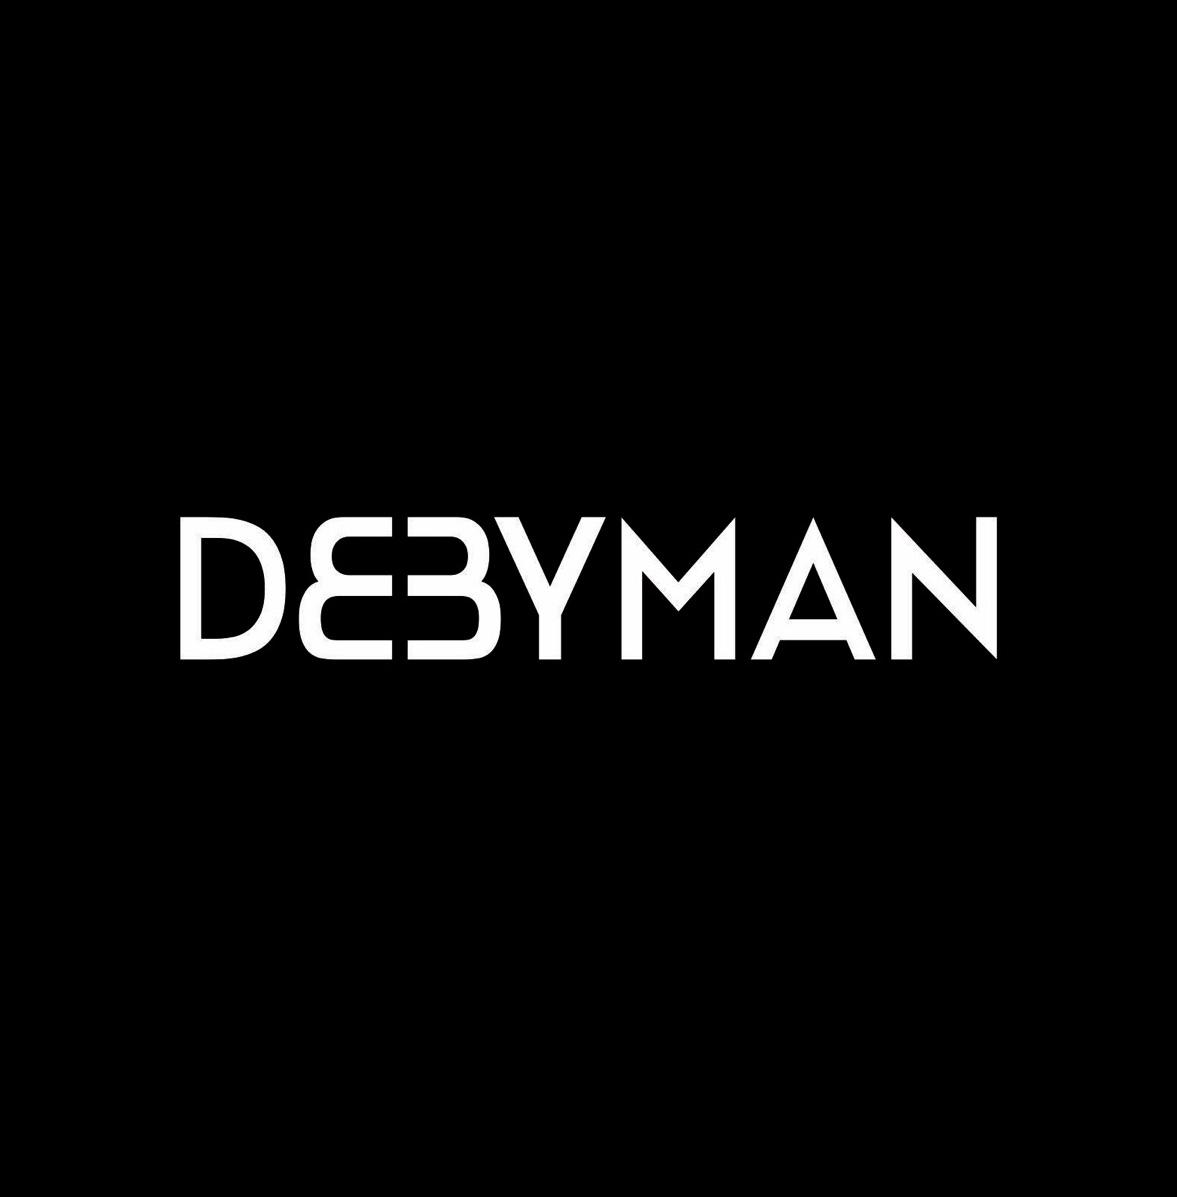 DEBYMAN